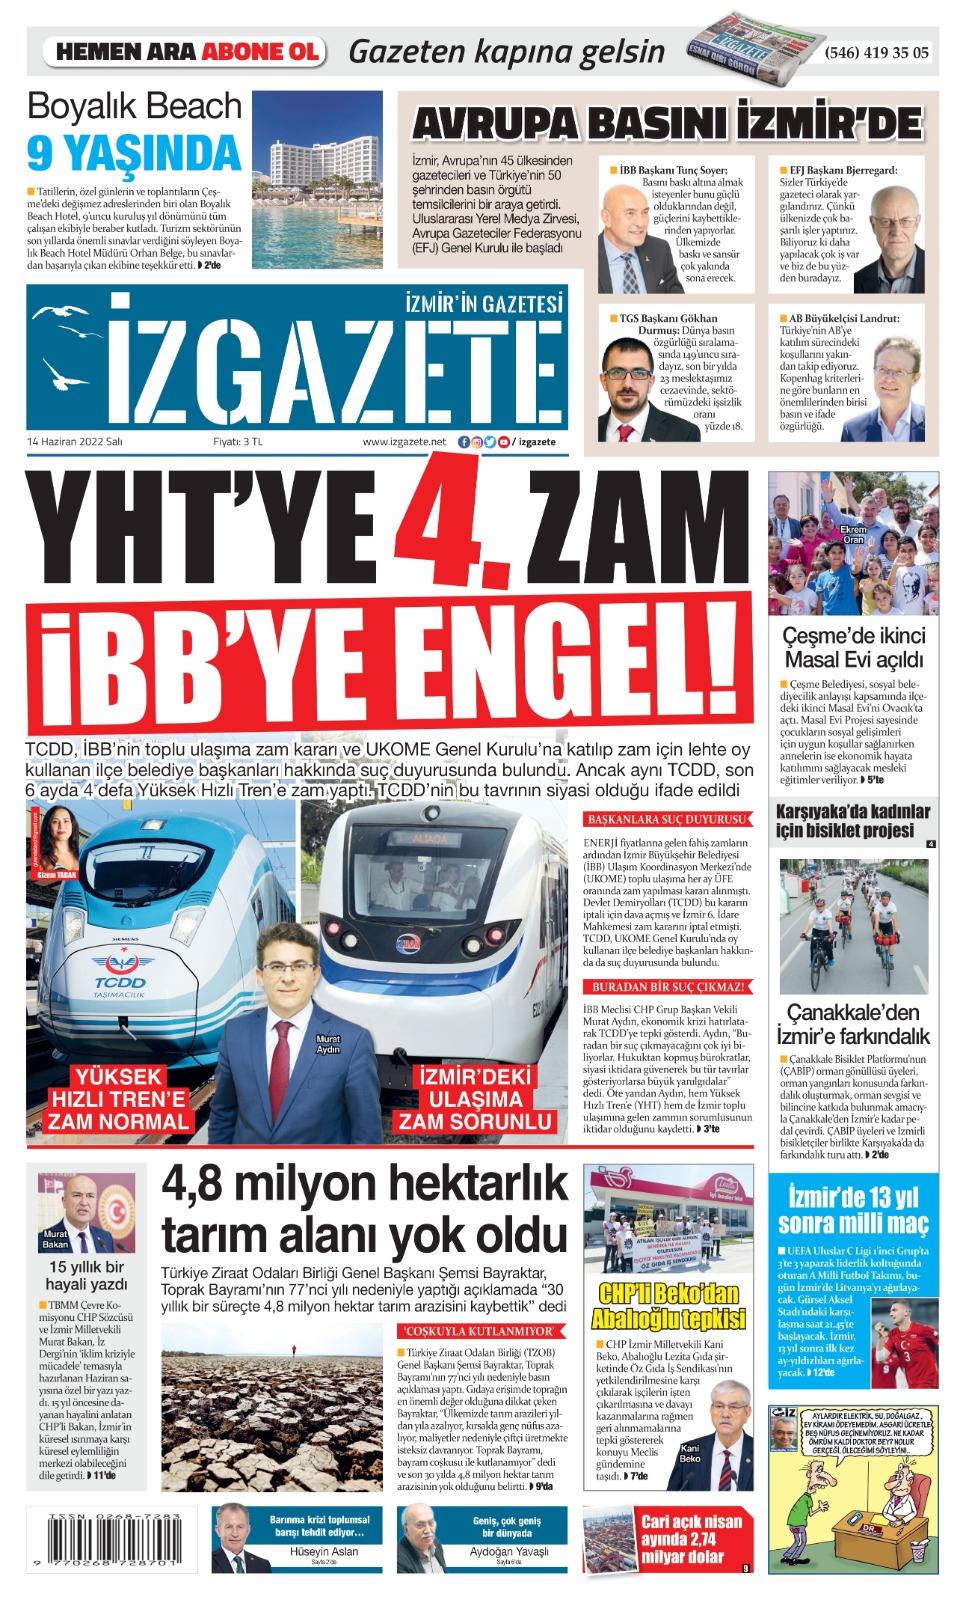 İz Gazete - İzmir'in Gazetesi - 14.06.2022 Manşeti